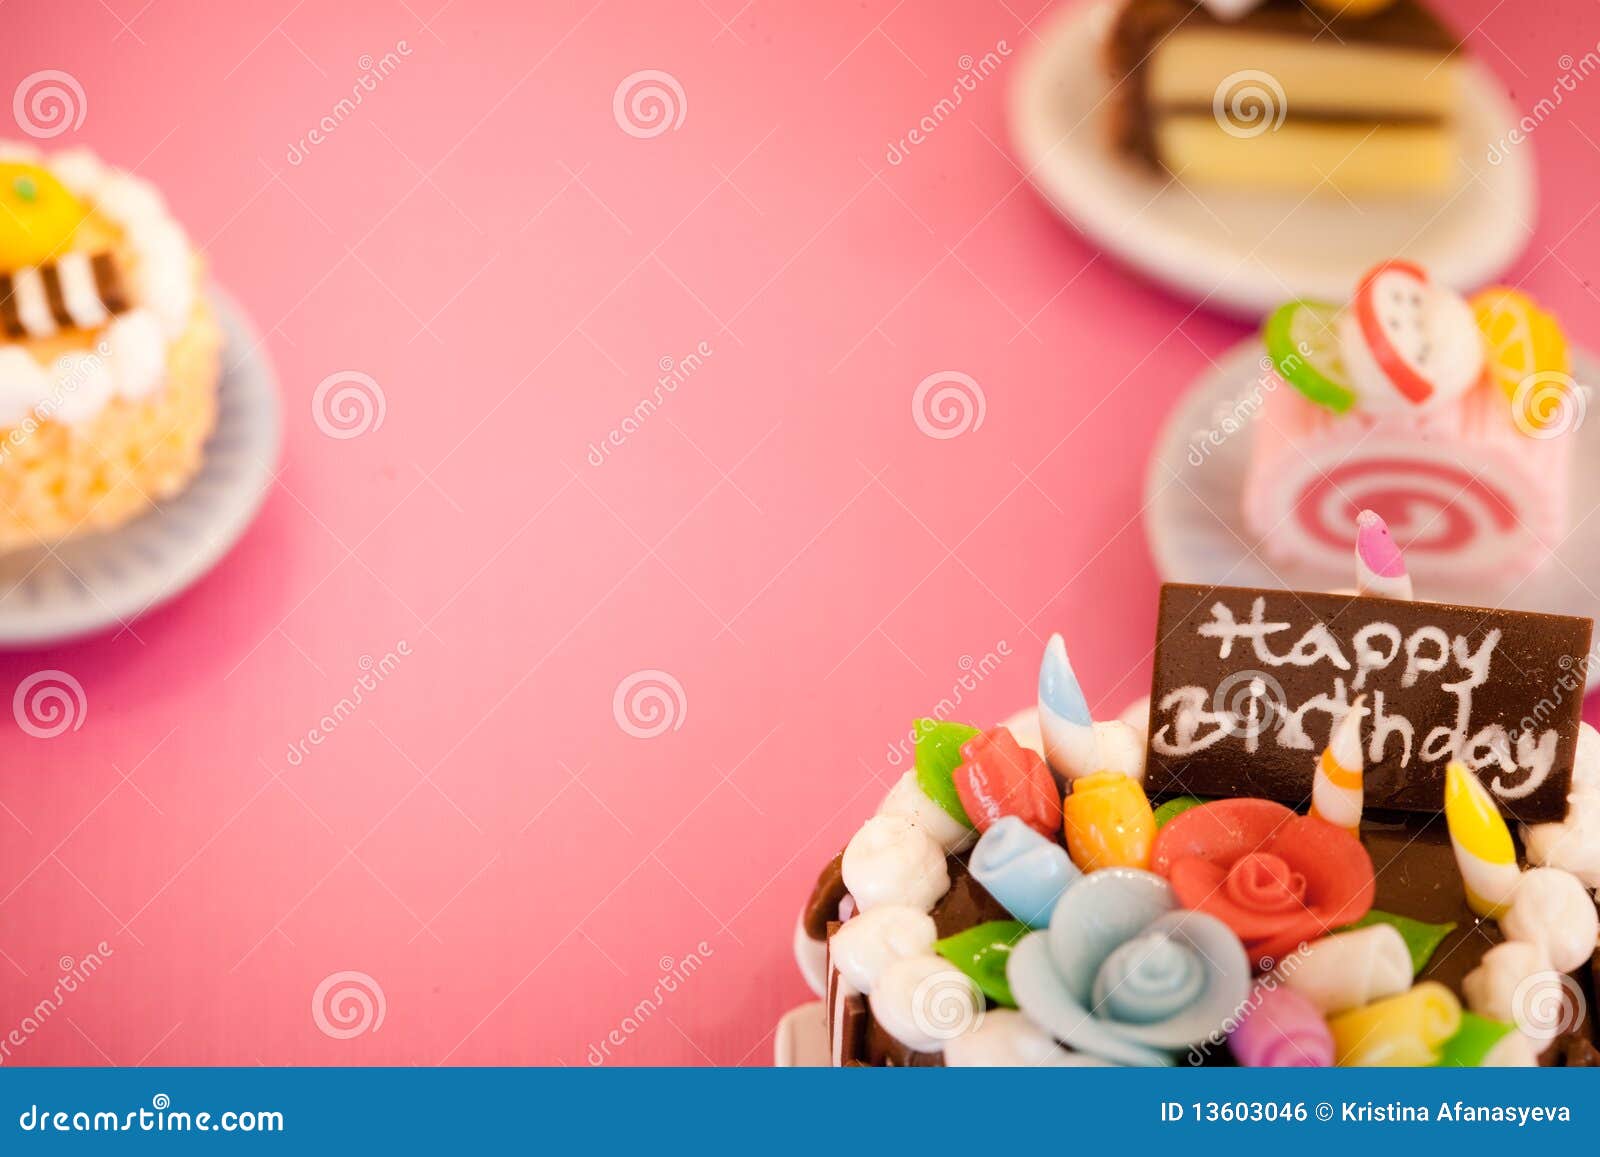 Birthday Cakes Background Royalty Free Stock Image - Image: 13603046